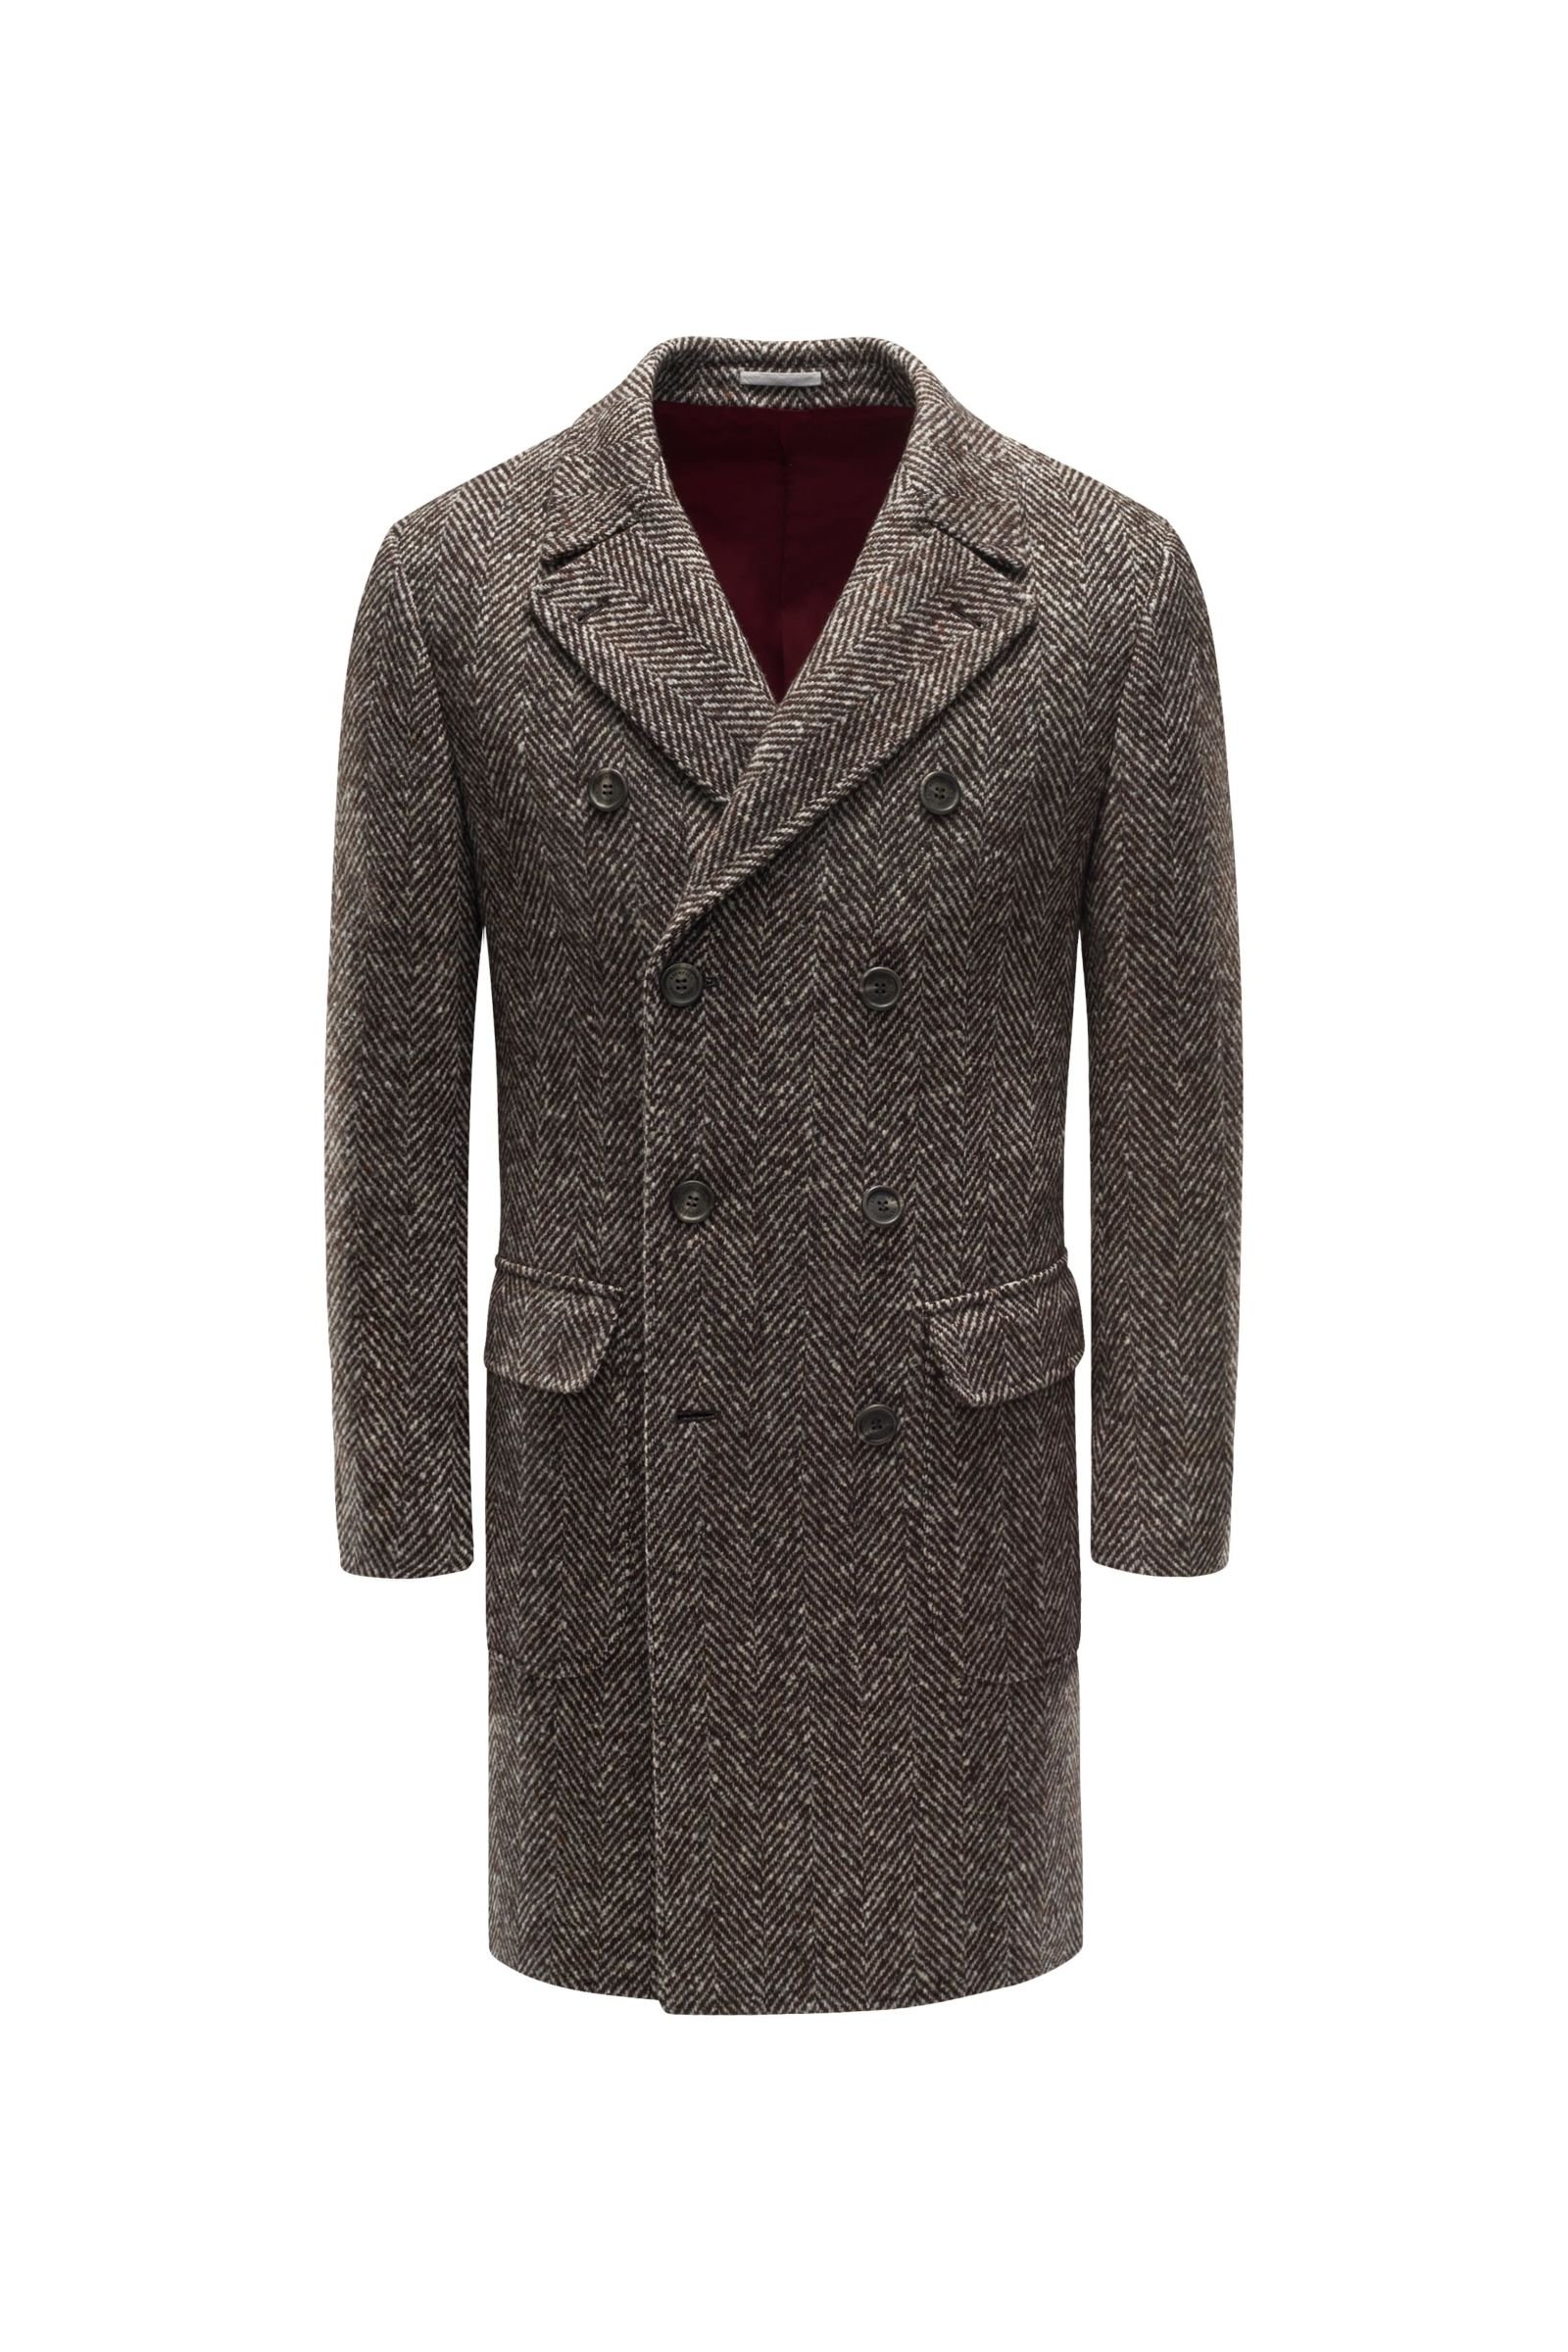 Wool coat brown patterned